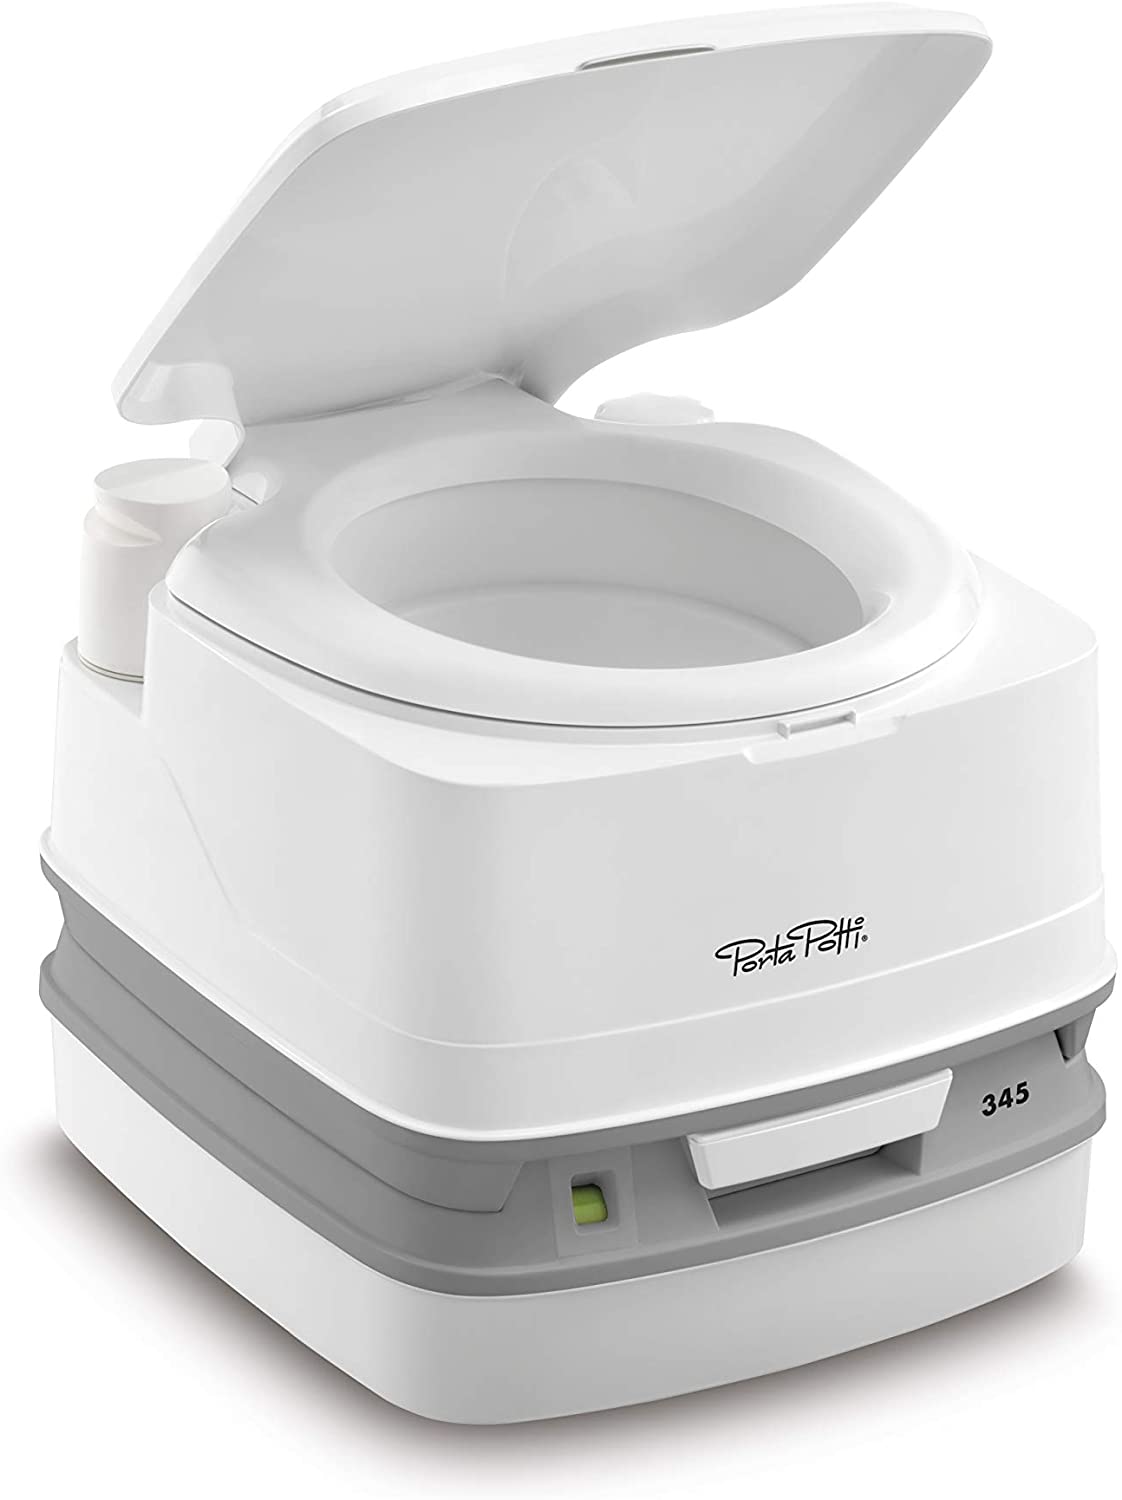 Thetford - Porta Potti® 345 White/Gray Portable Toilet , Part No 92814